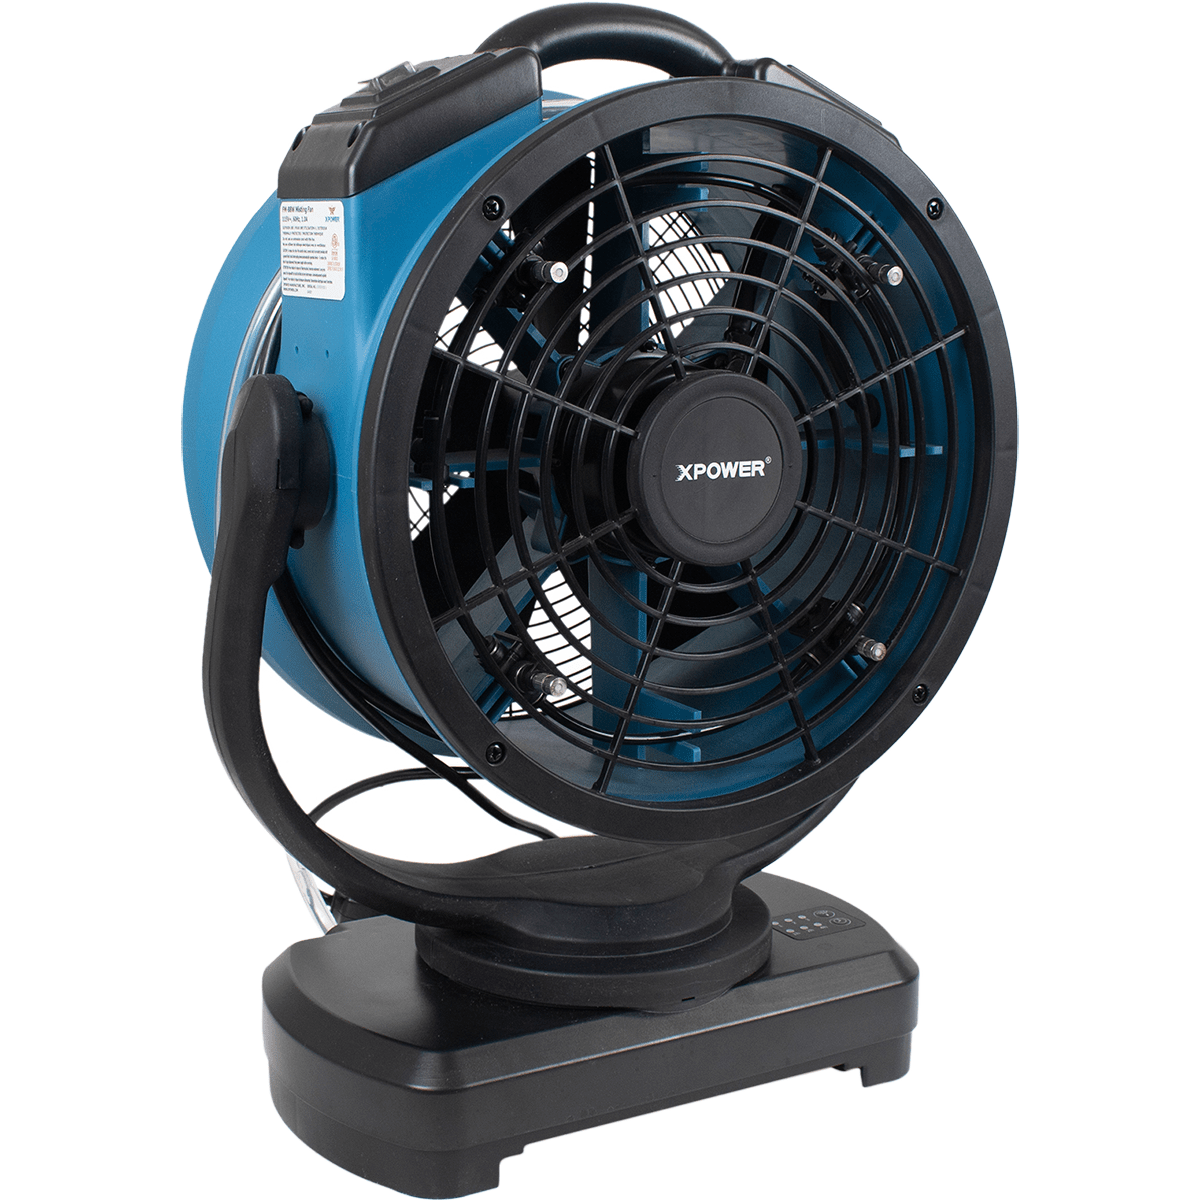 XPOWER 1700 CFM Misting Fan w/ Optional Water Reservoir - Fan Only